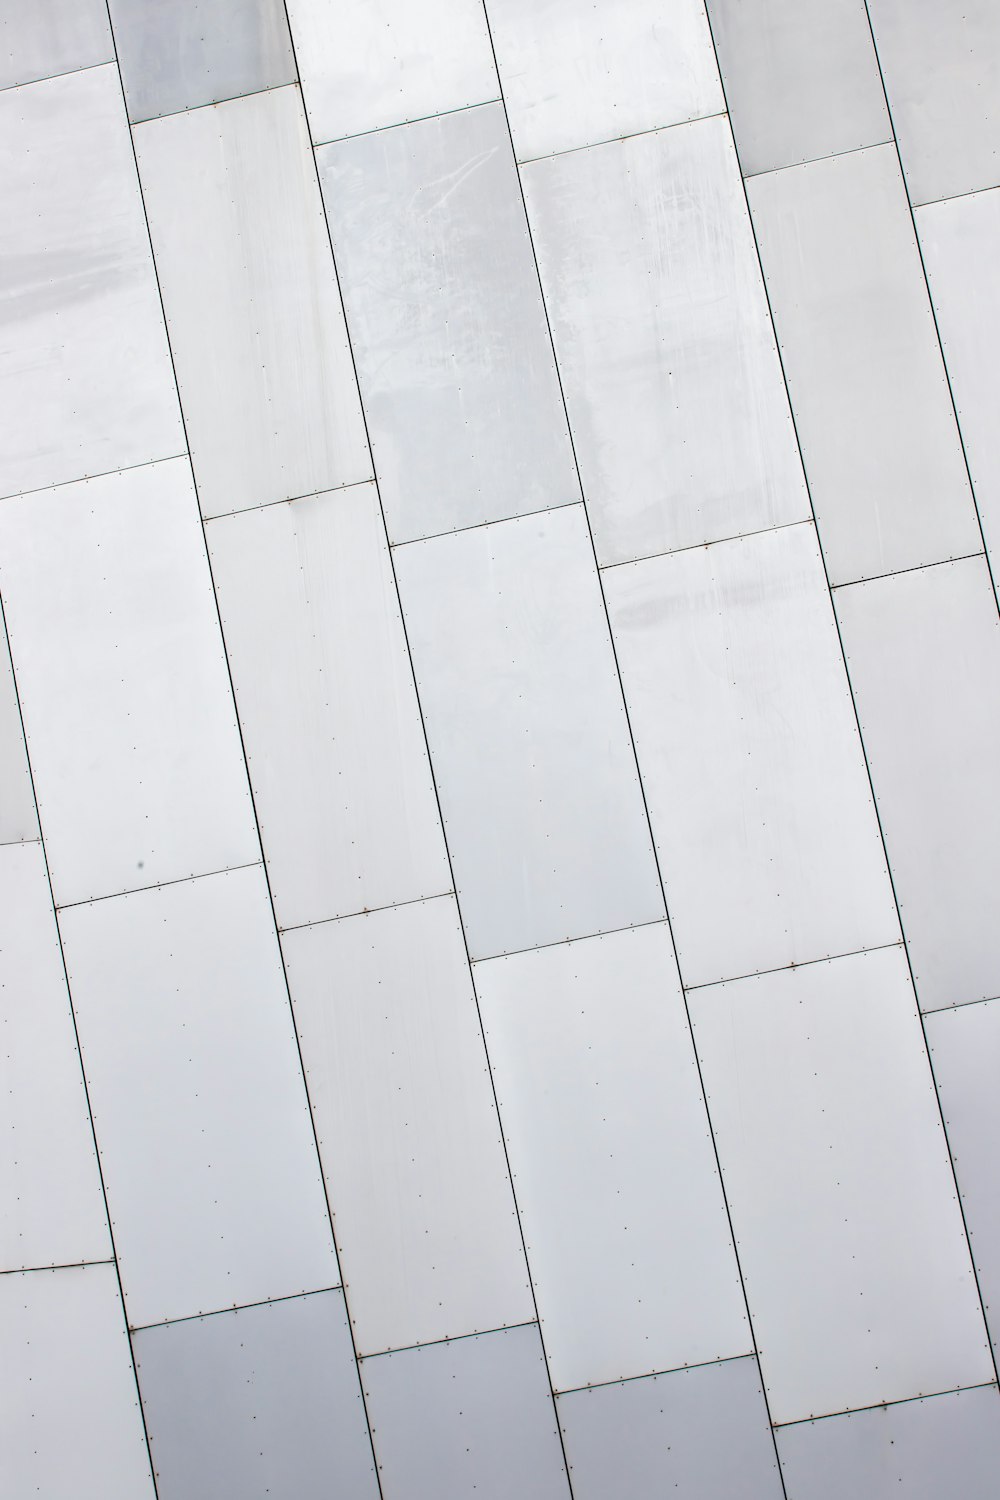 white ceramic tiles in room